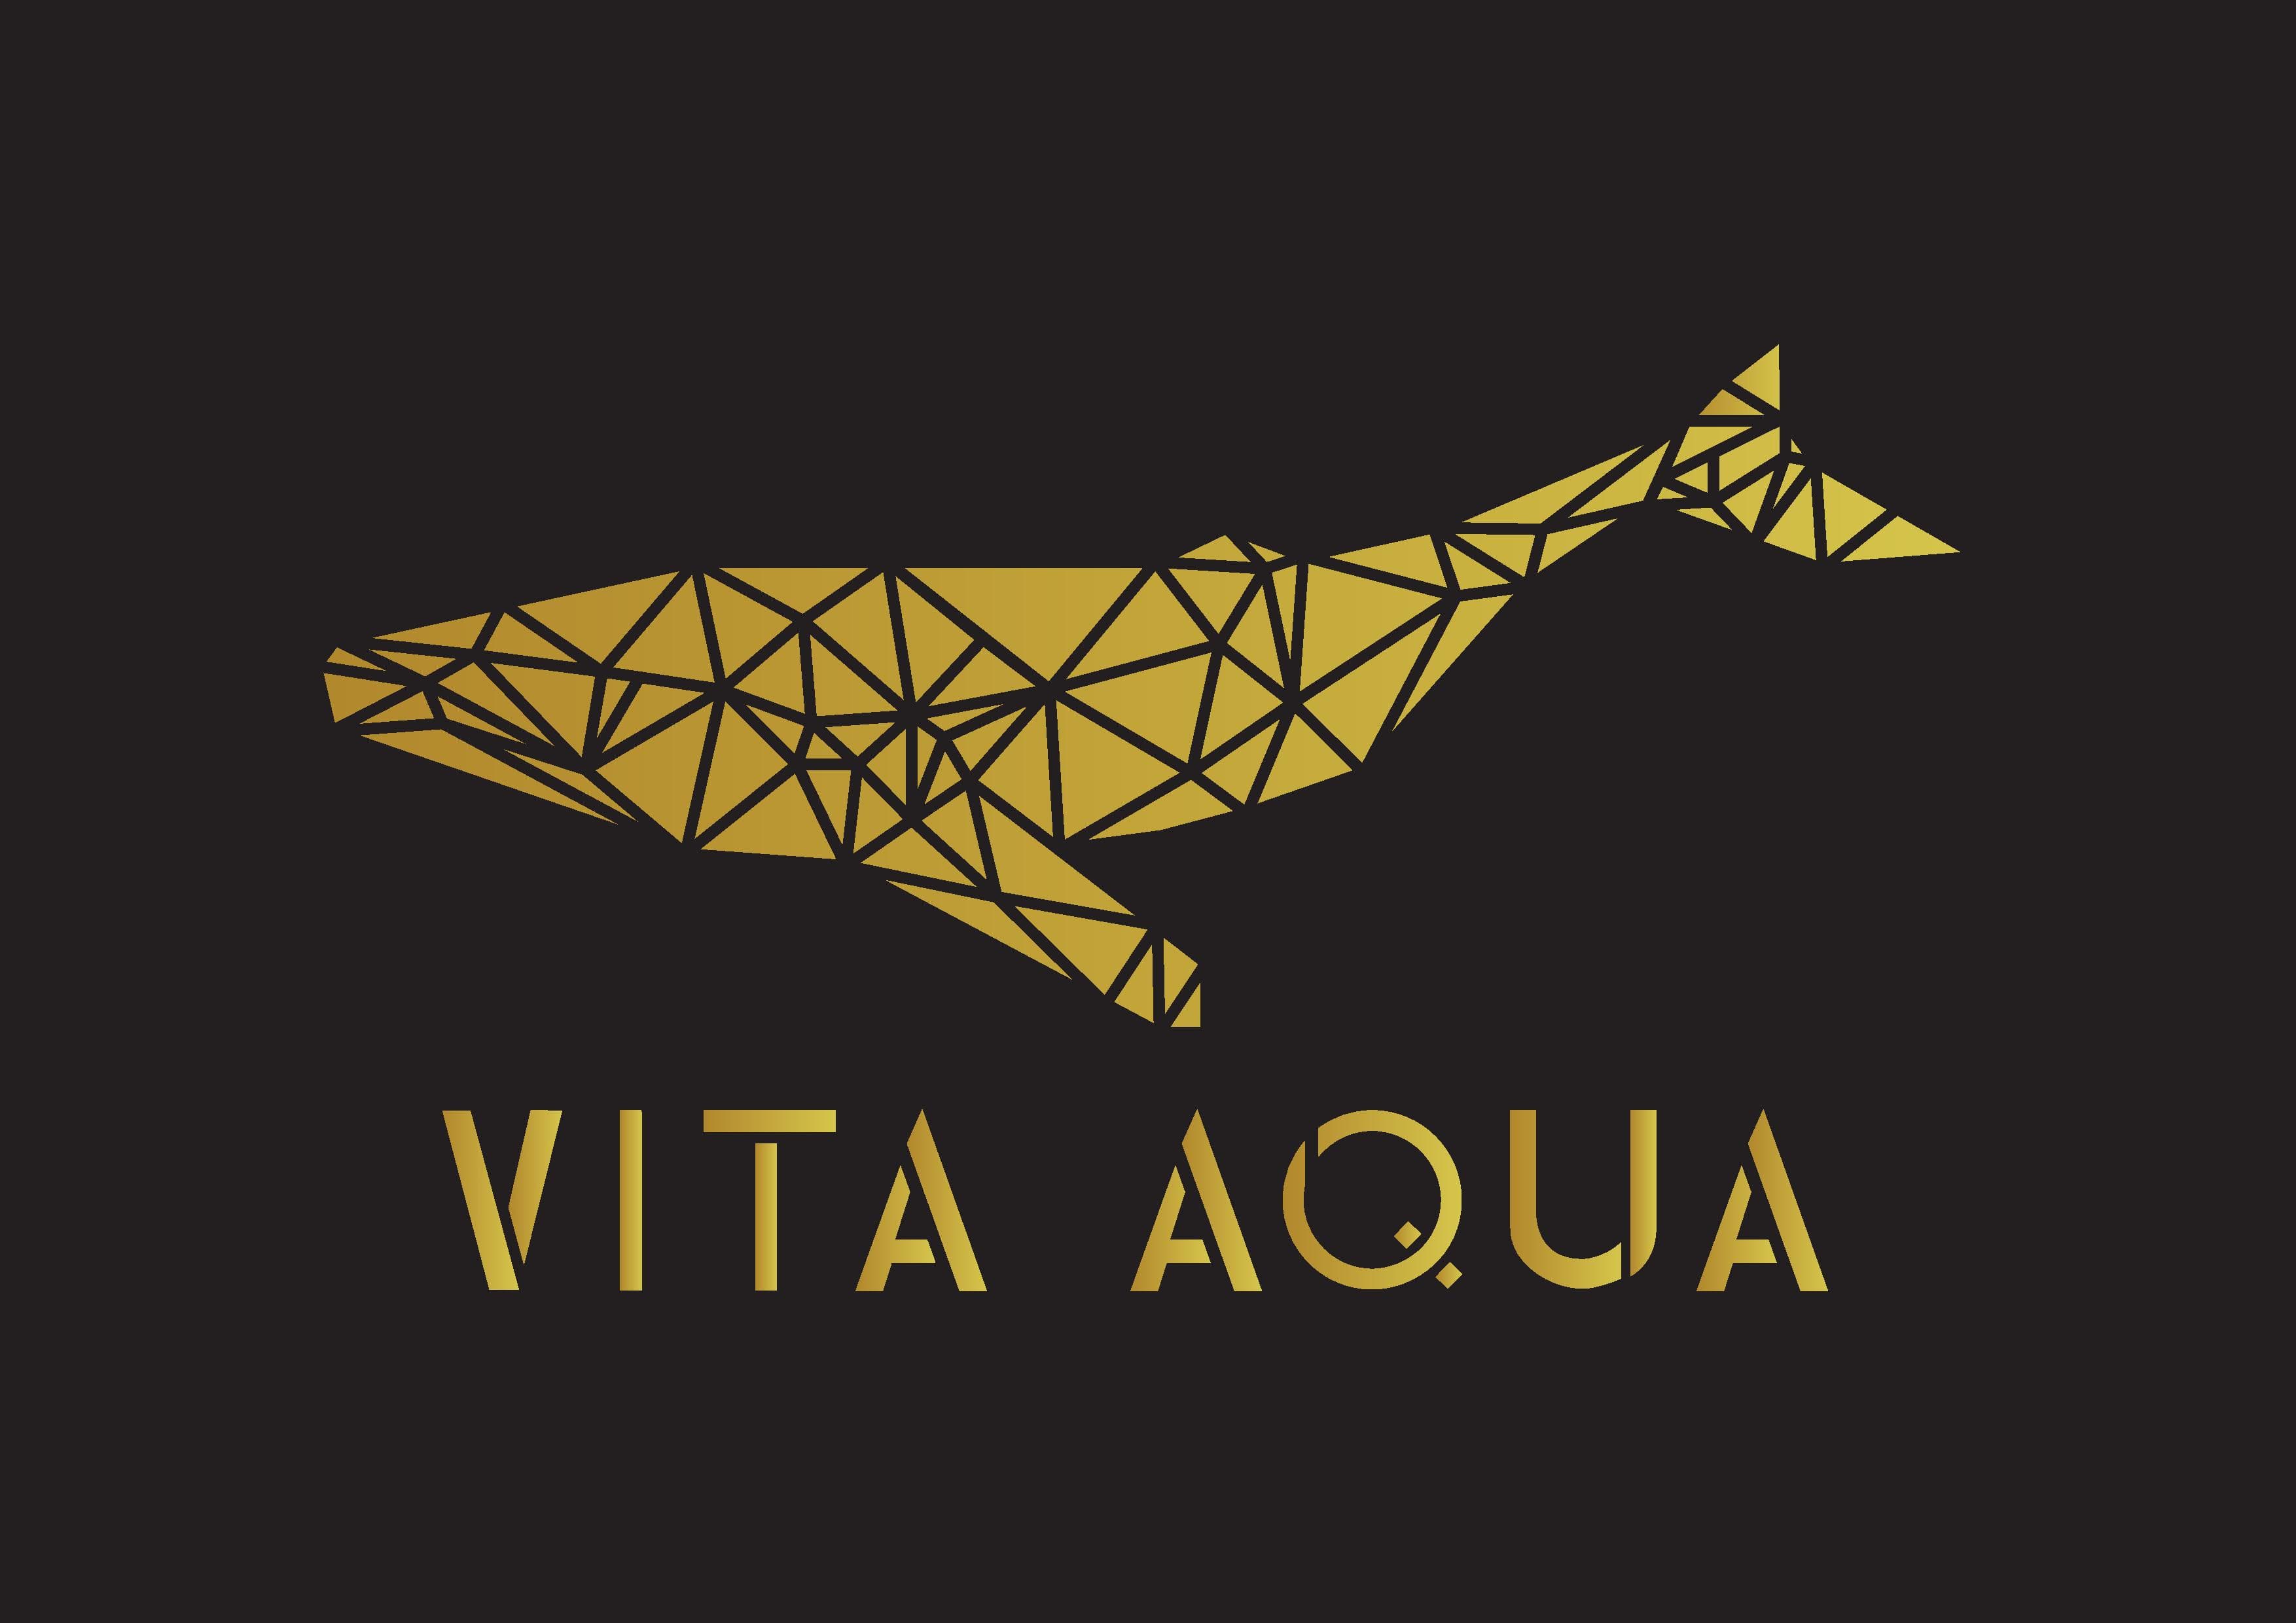 Vita Aqua Ltd.